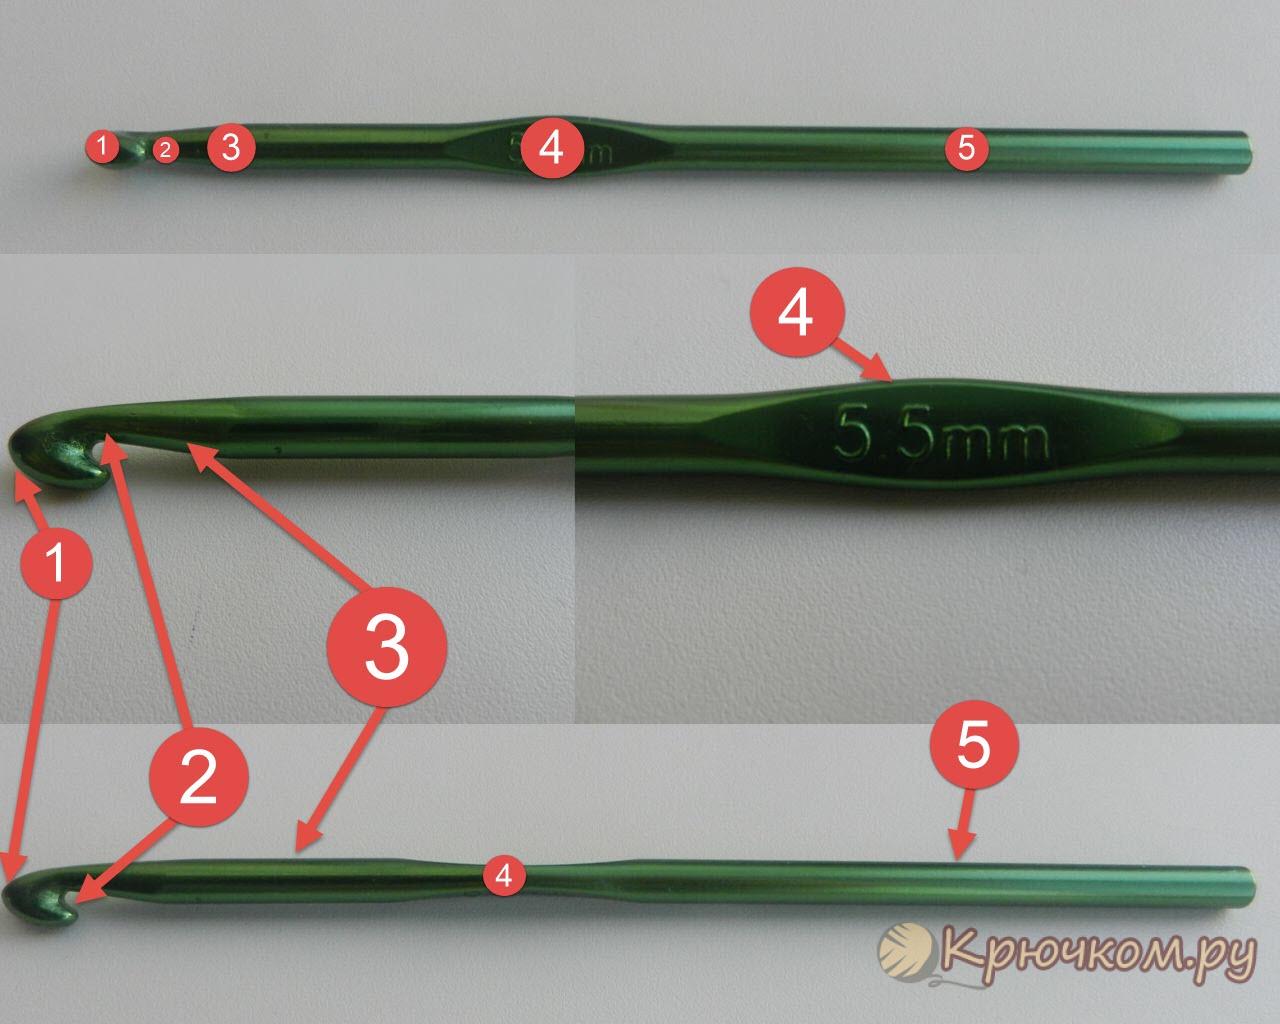  Как выбрать крючок номер 5 для вязания? 